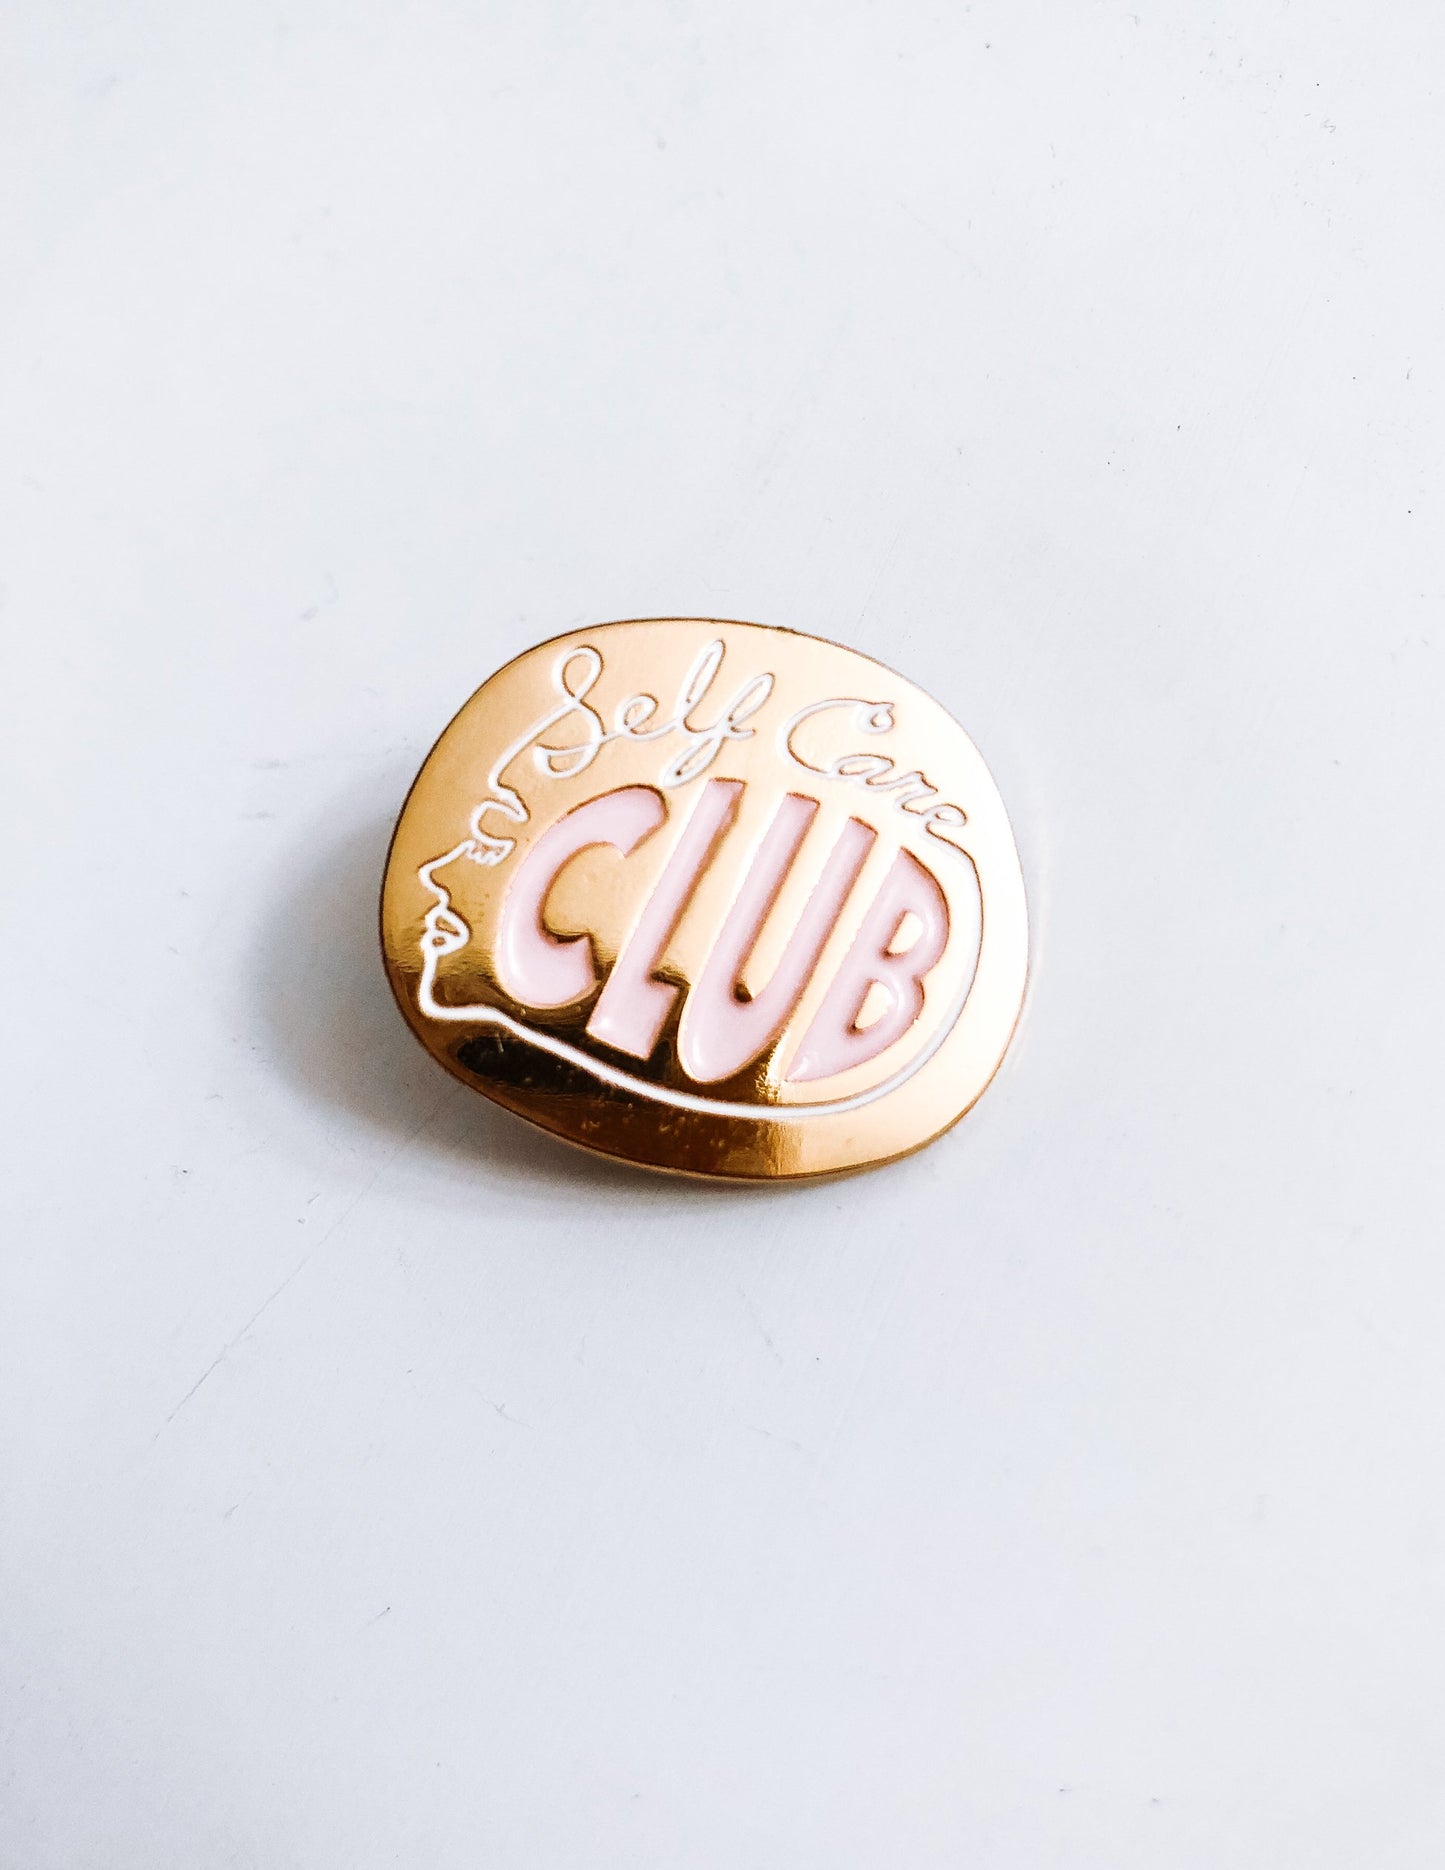 Self Care Club Pin